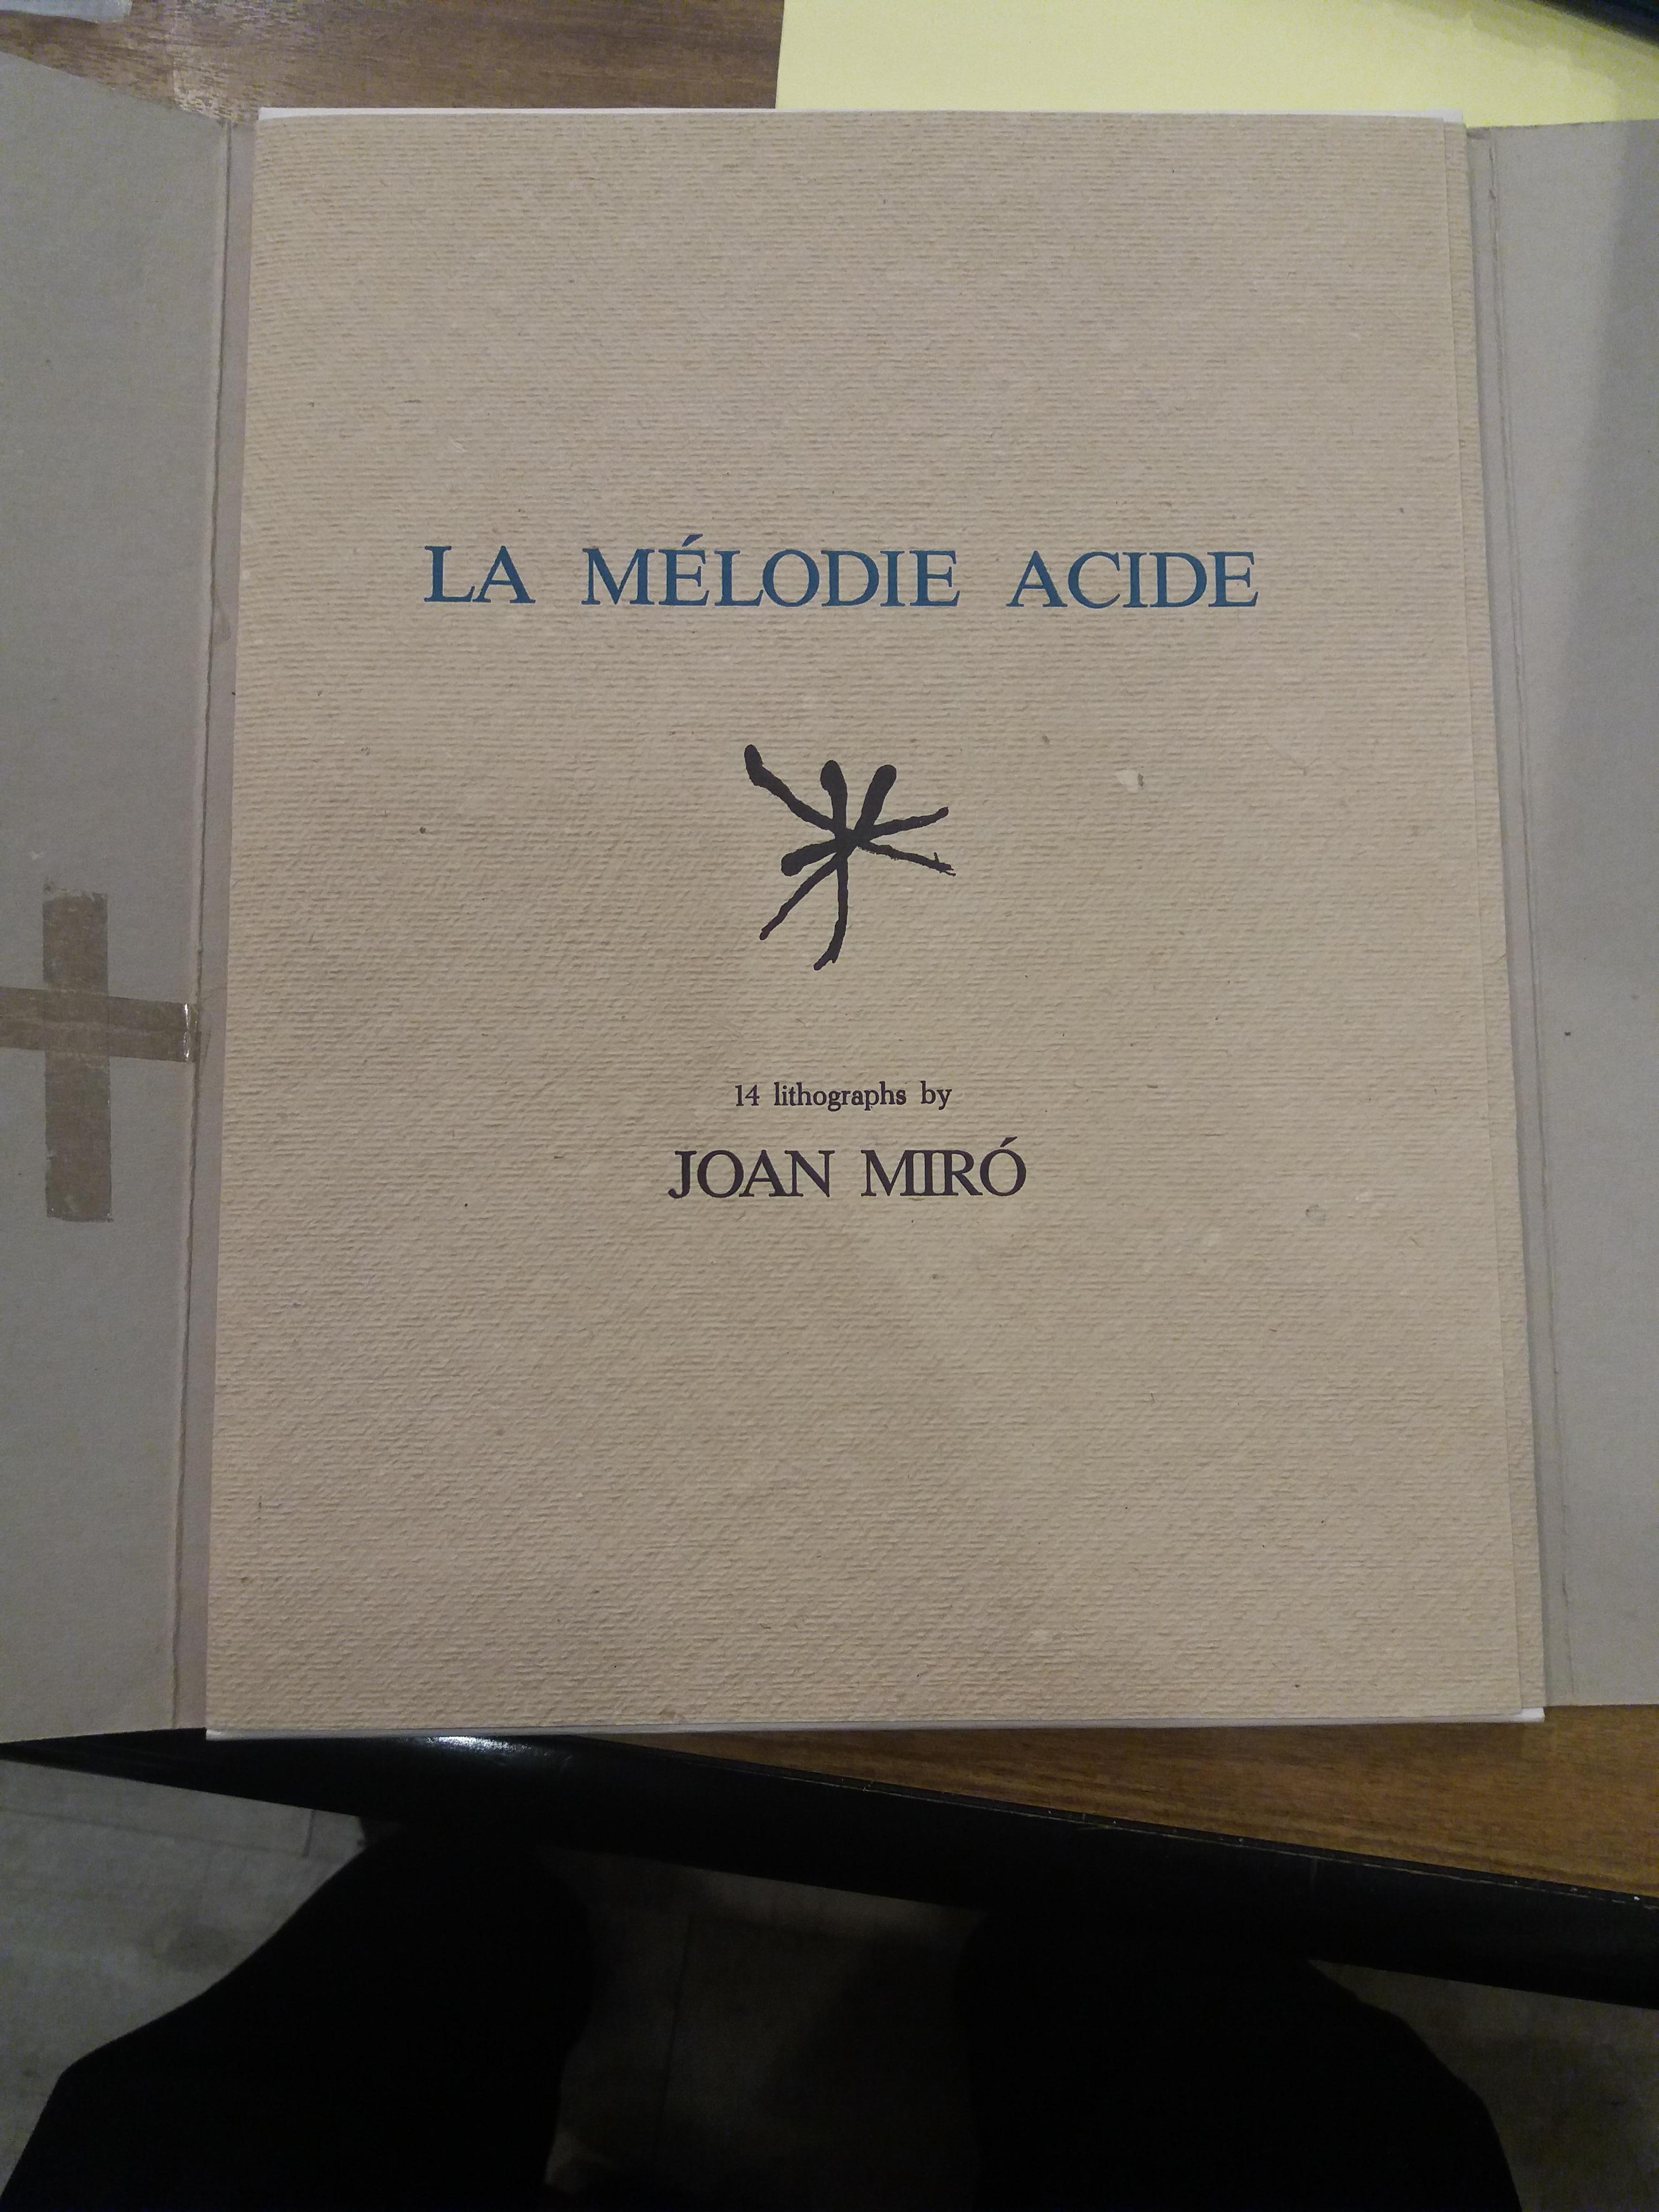 Miro   La melodie acide. lithograph - Print by Joan Miró